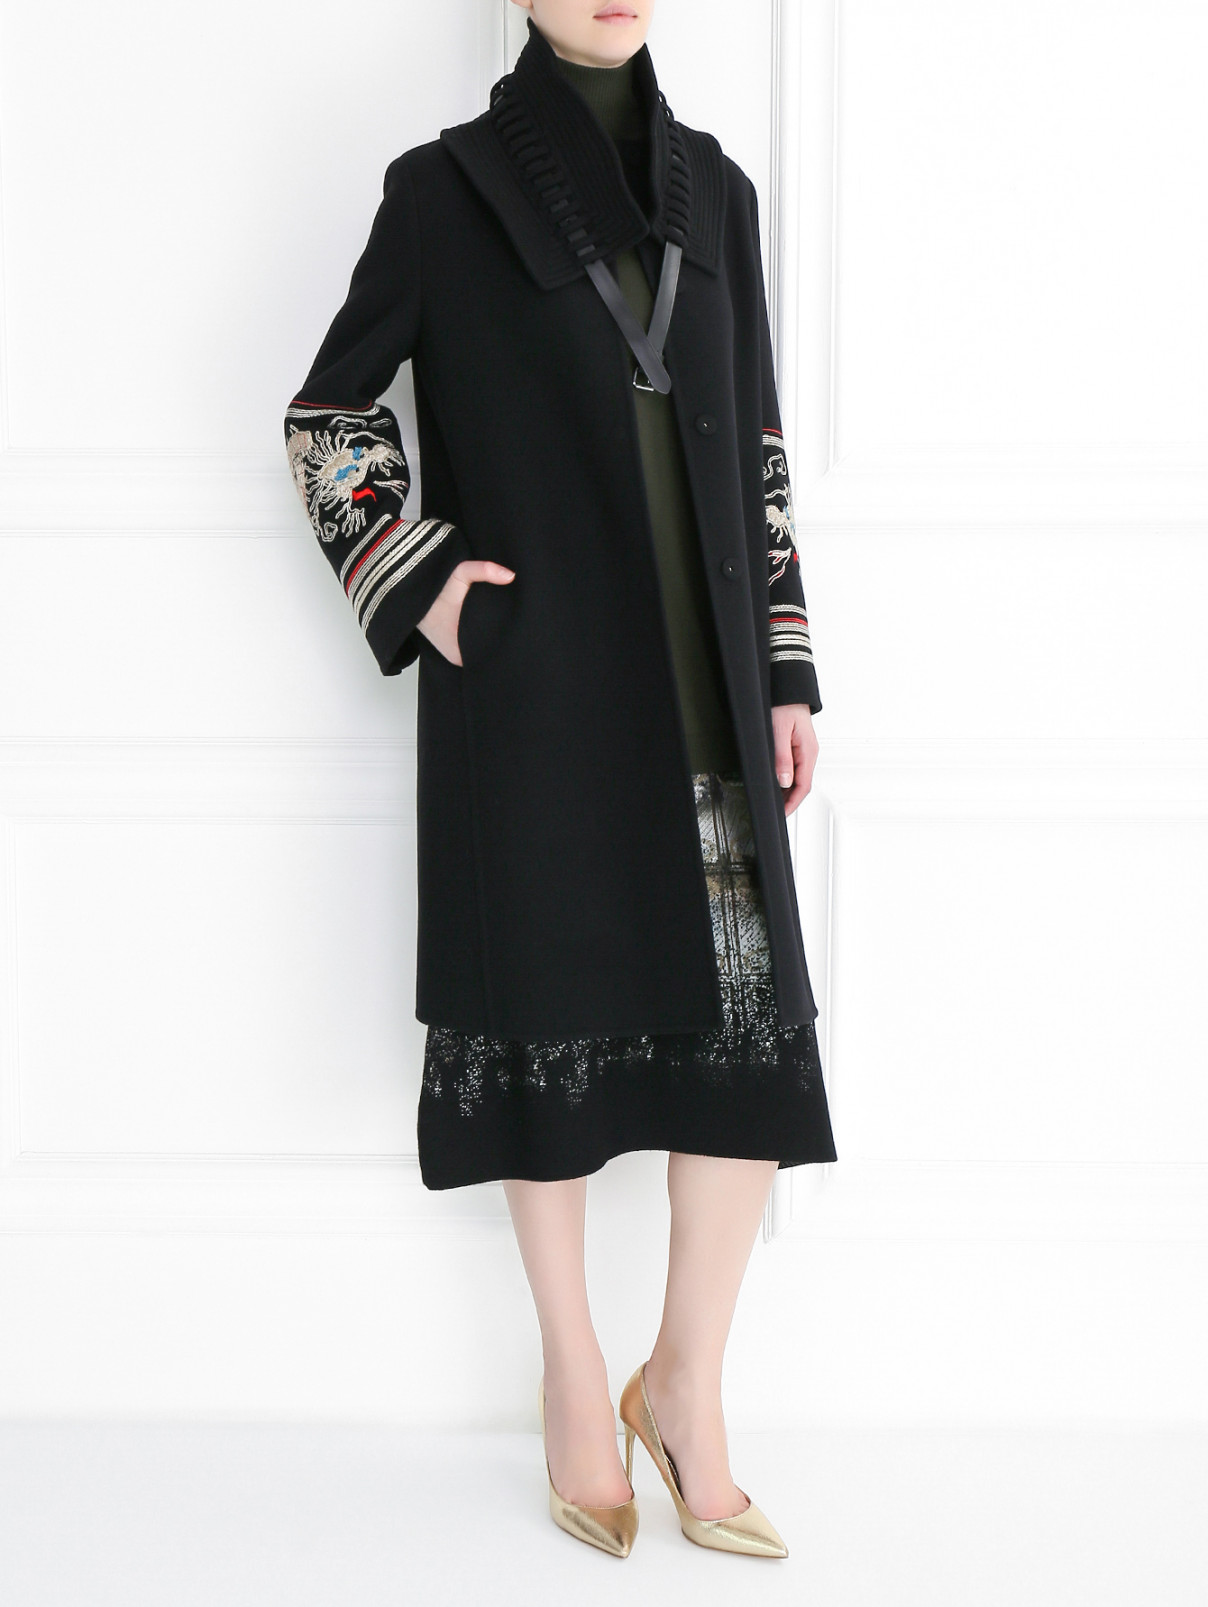 Пальто из шерсти с вышивкой на рукавах Ermanno Scervino  –  Модель Общий вид  – Цвет:  Черный